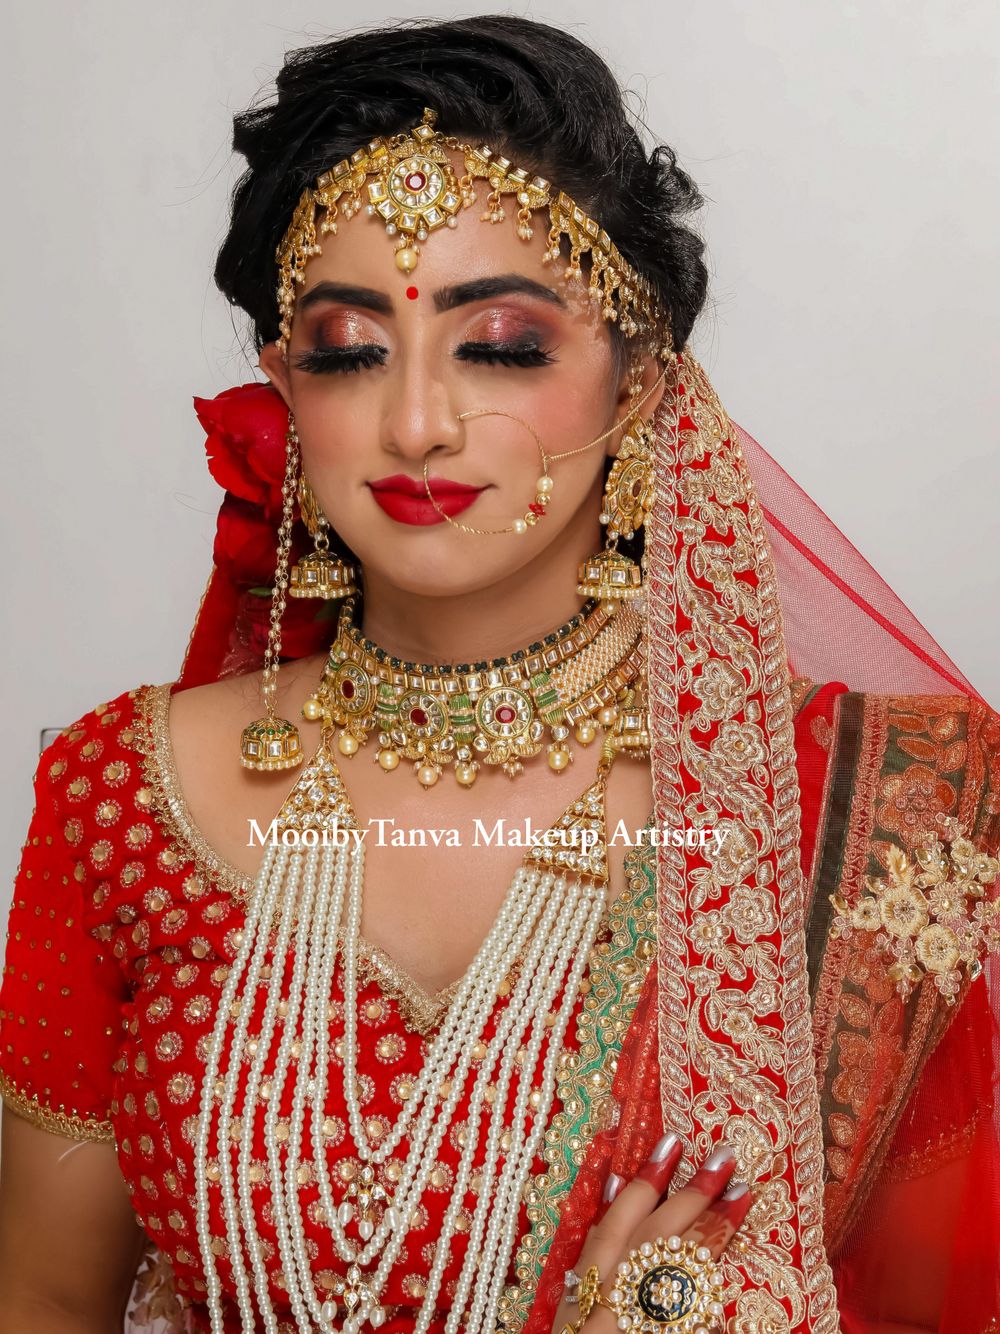 Photo From Bridal Aayushi - By Mooibytanva Makeup Artistry